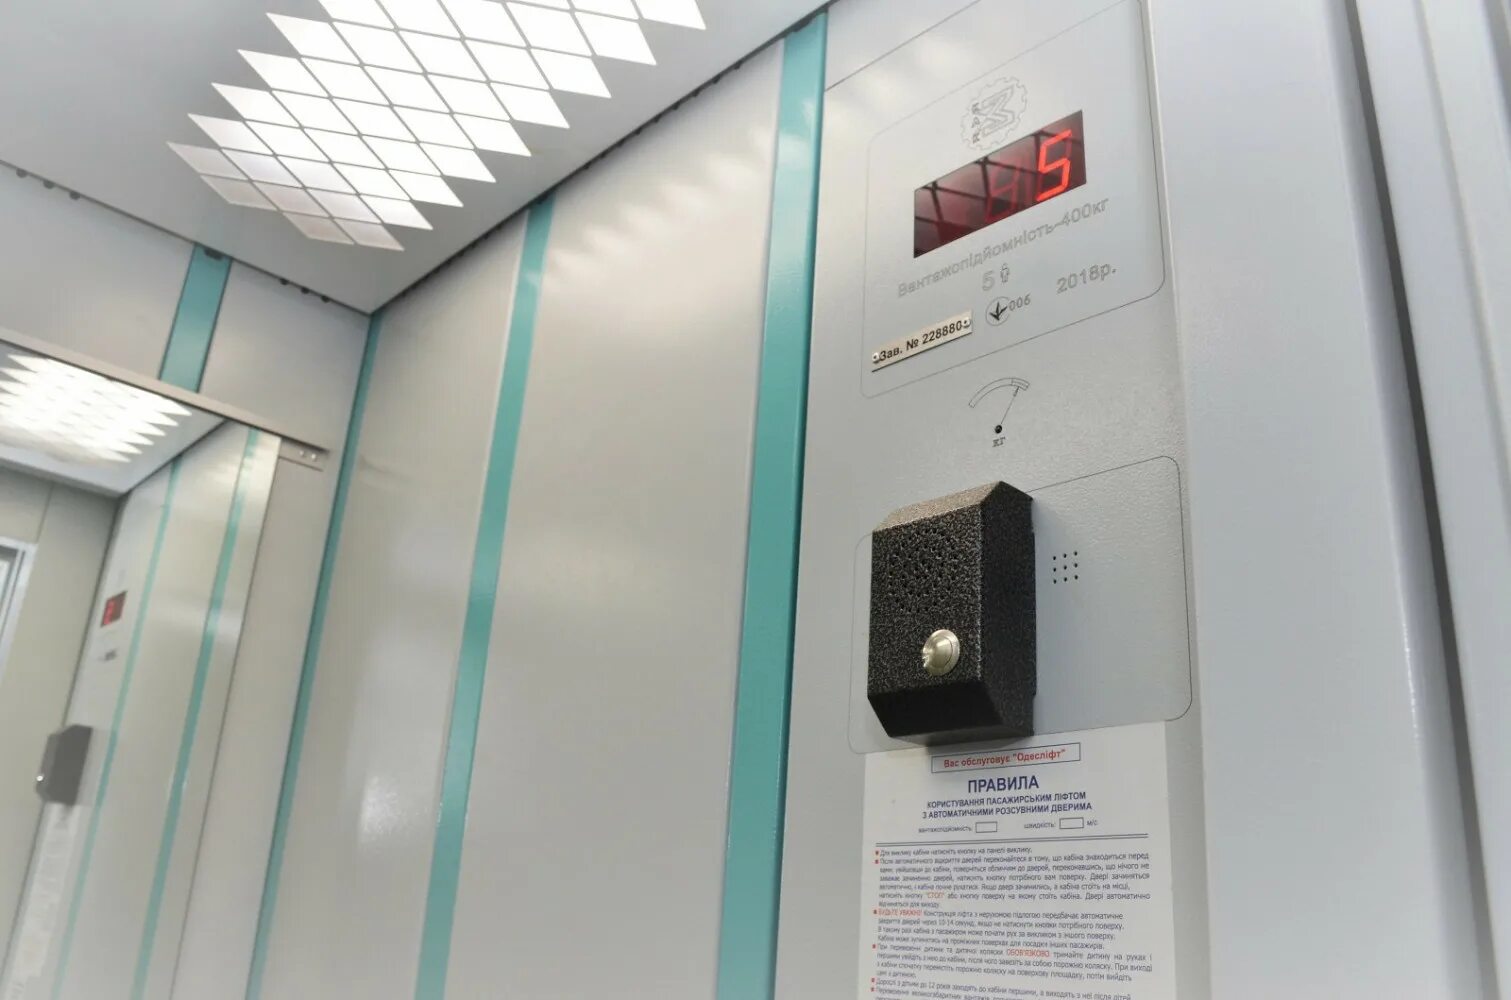 Панель лифта Сиблифт. Лифт Сиблифт кабина. Модернизированный лифт ЩЛЗ. Блок вызова диспетчера лифта.